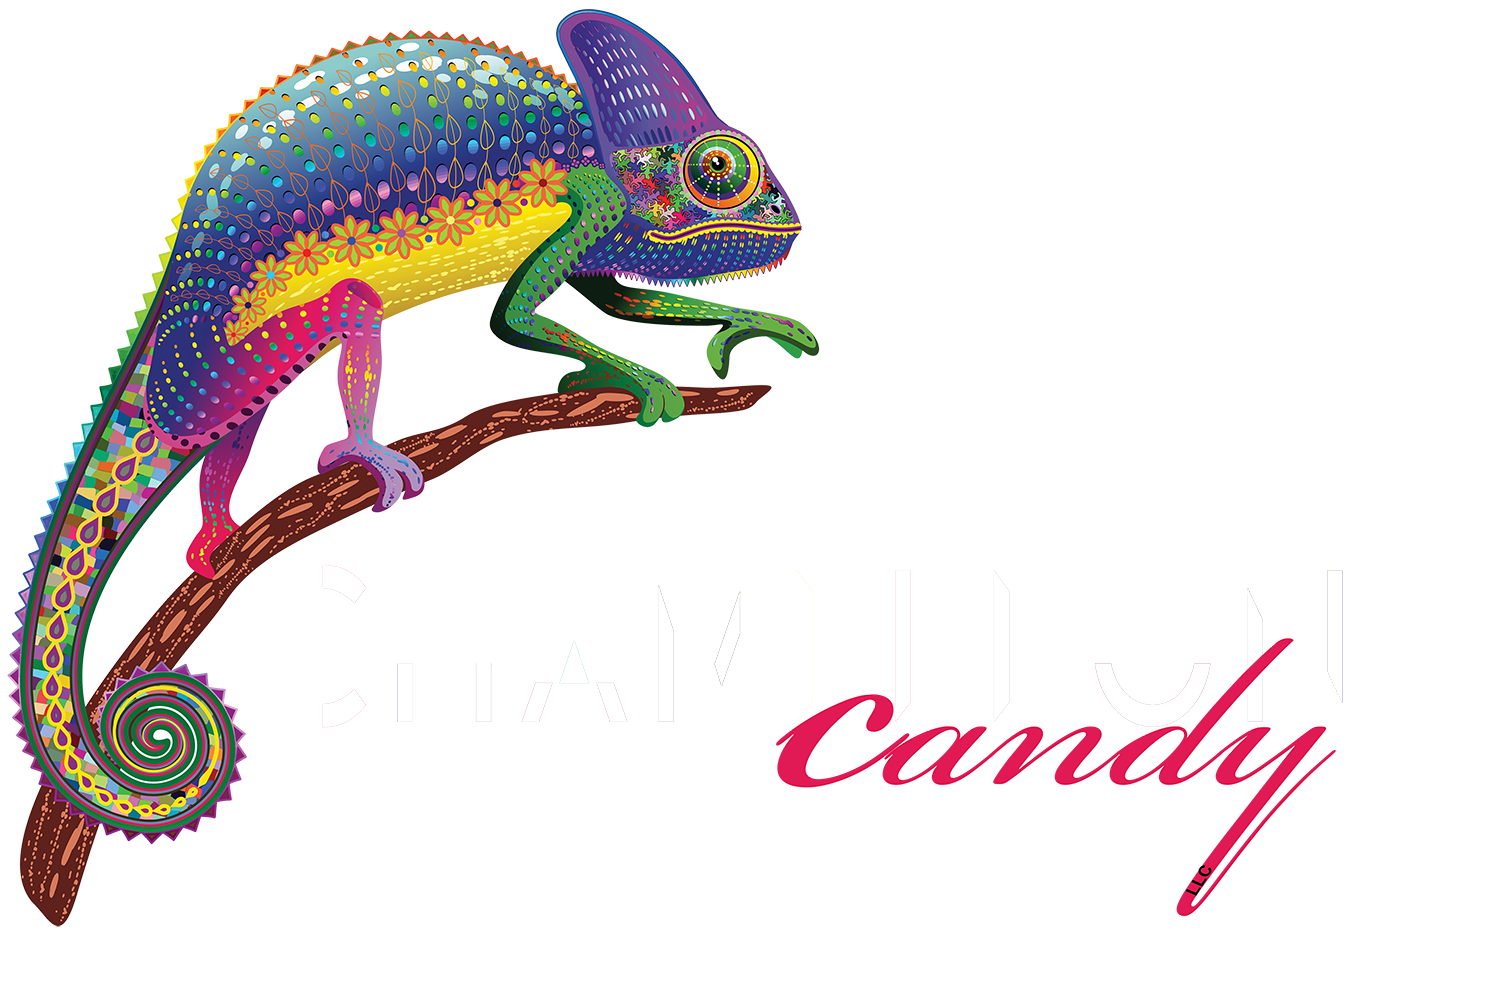 lizard clipart chameleon